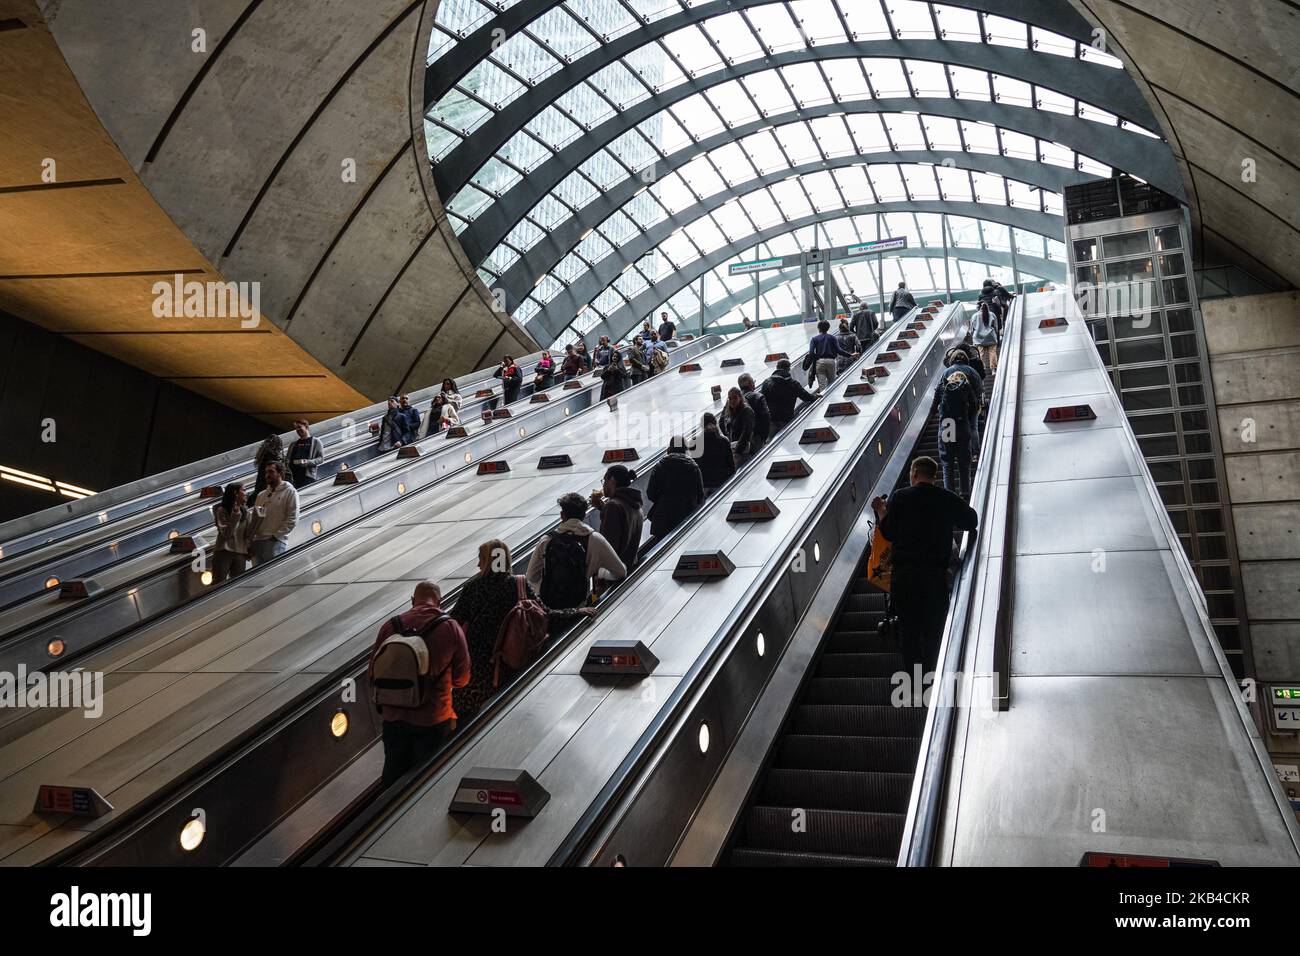 Personnes sur les escaliers roulants à Canary Wharf souterrain, station de métro Londres Angleterre Royaume-Uni Banque D'Images